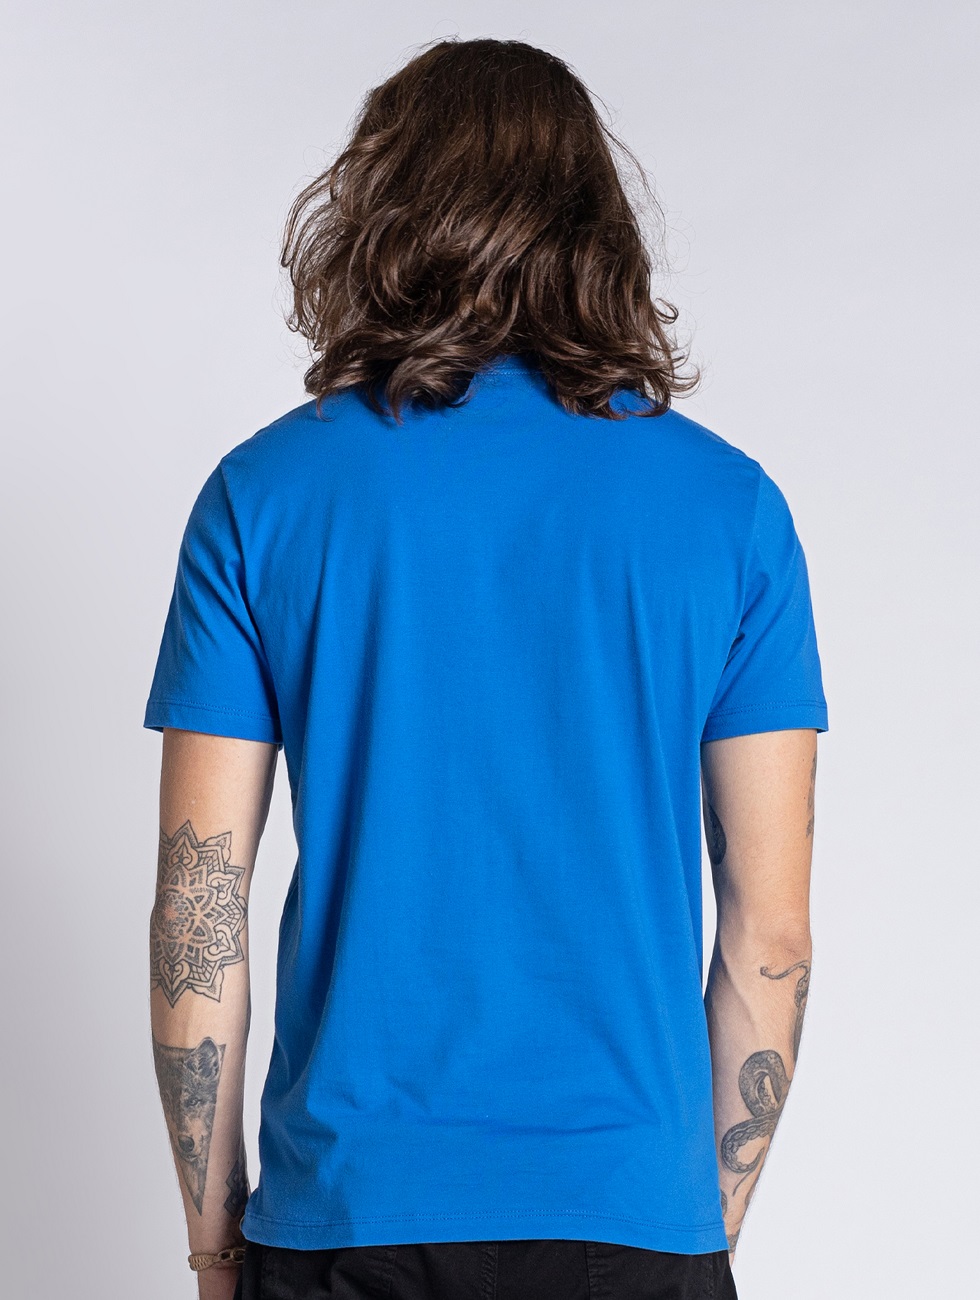 Camiseta Azul Masculina em Algodão - OVBK